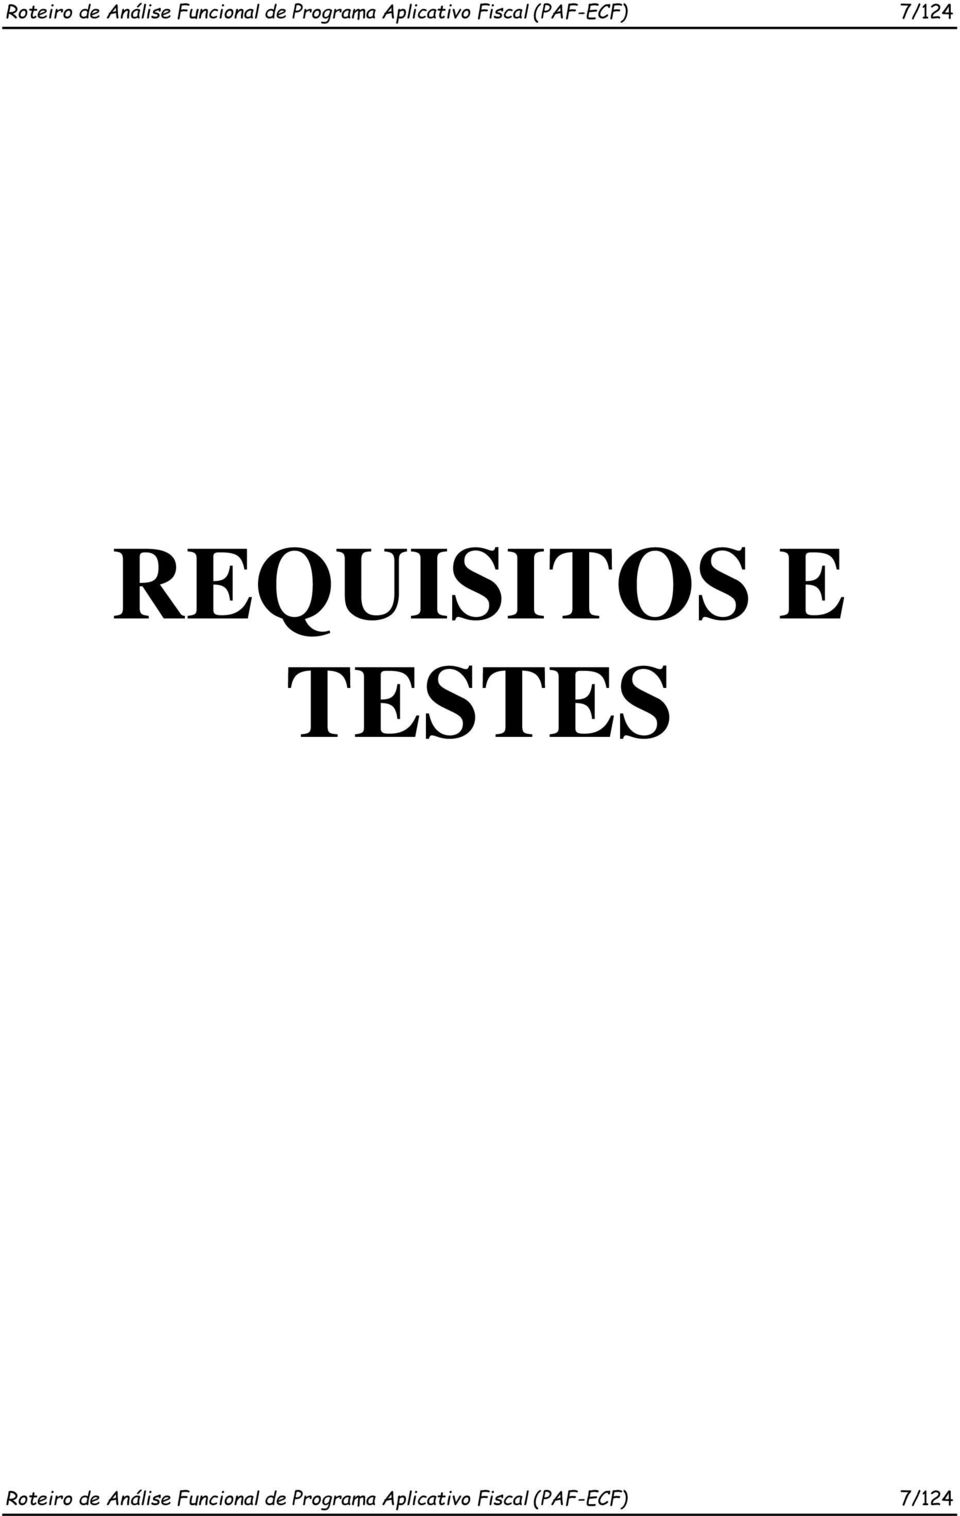 REQUISITOS E TESTES